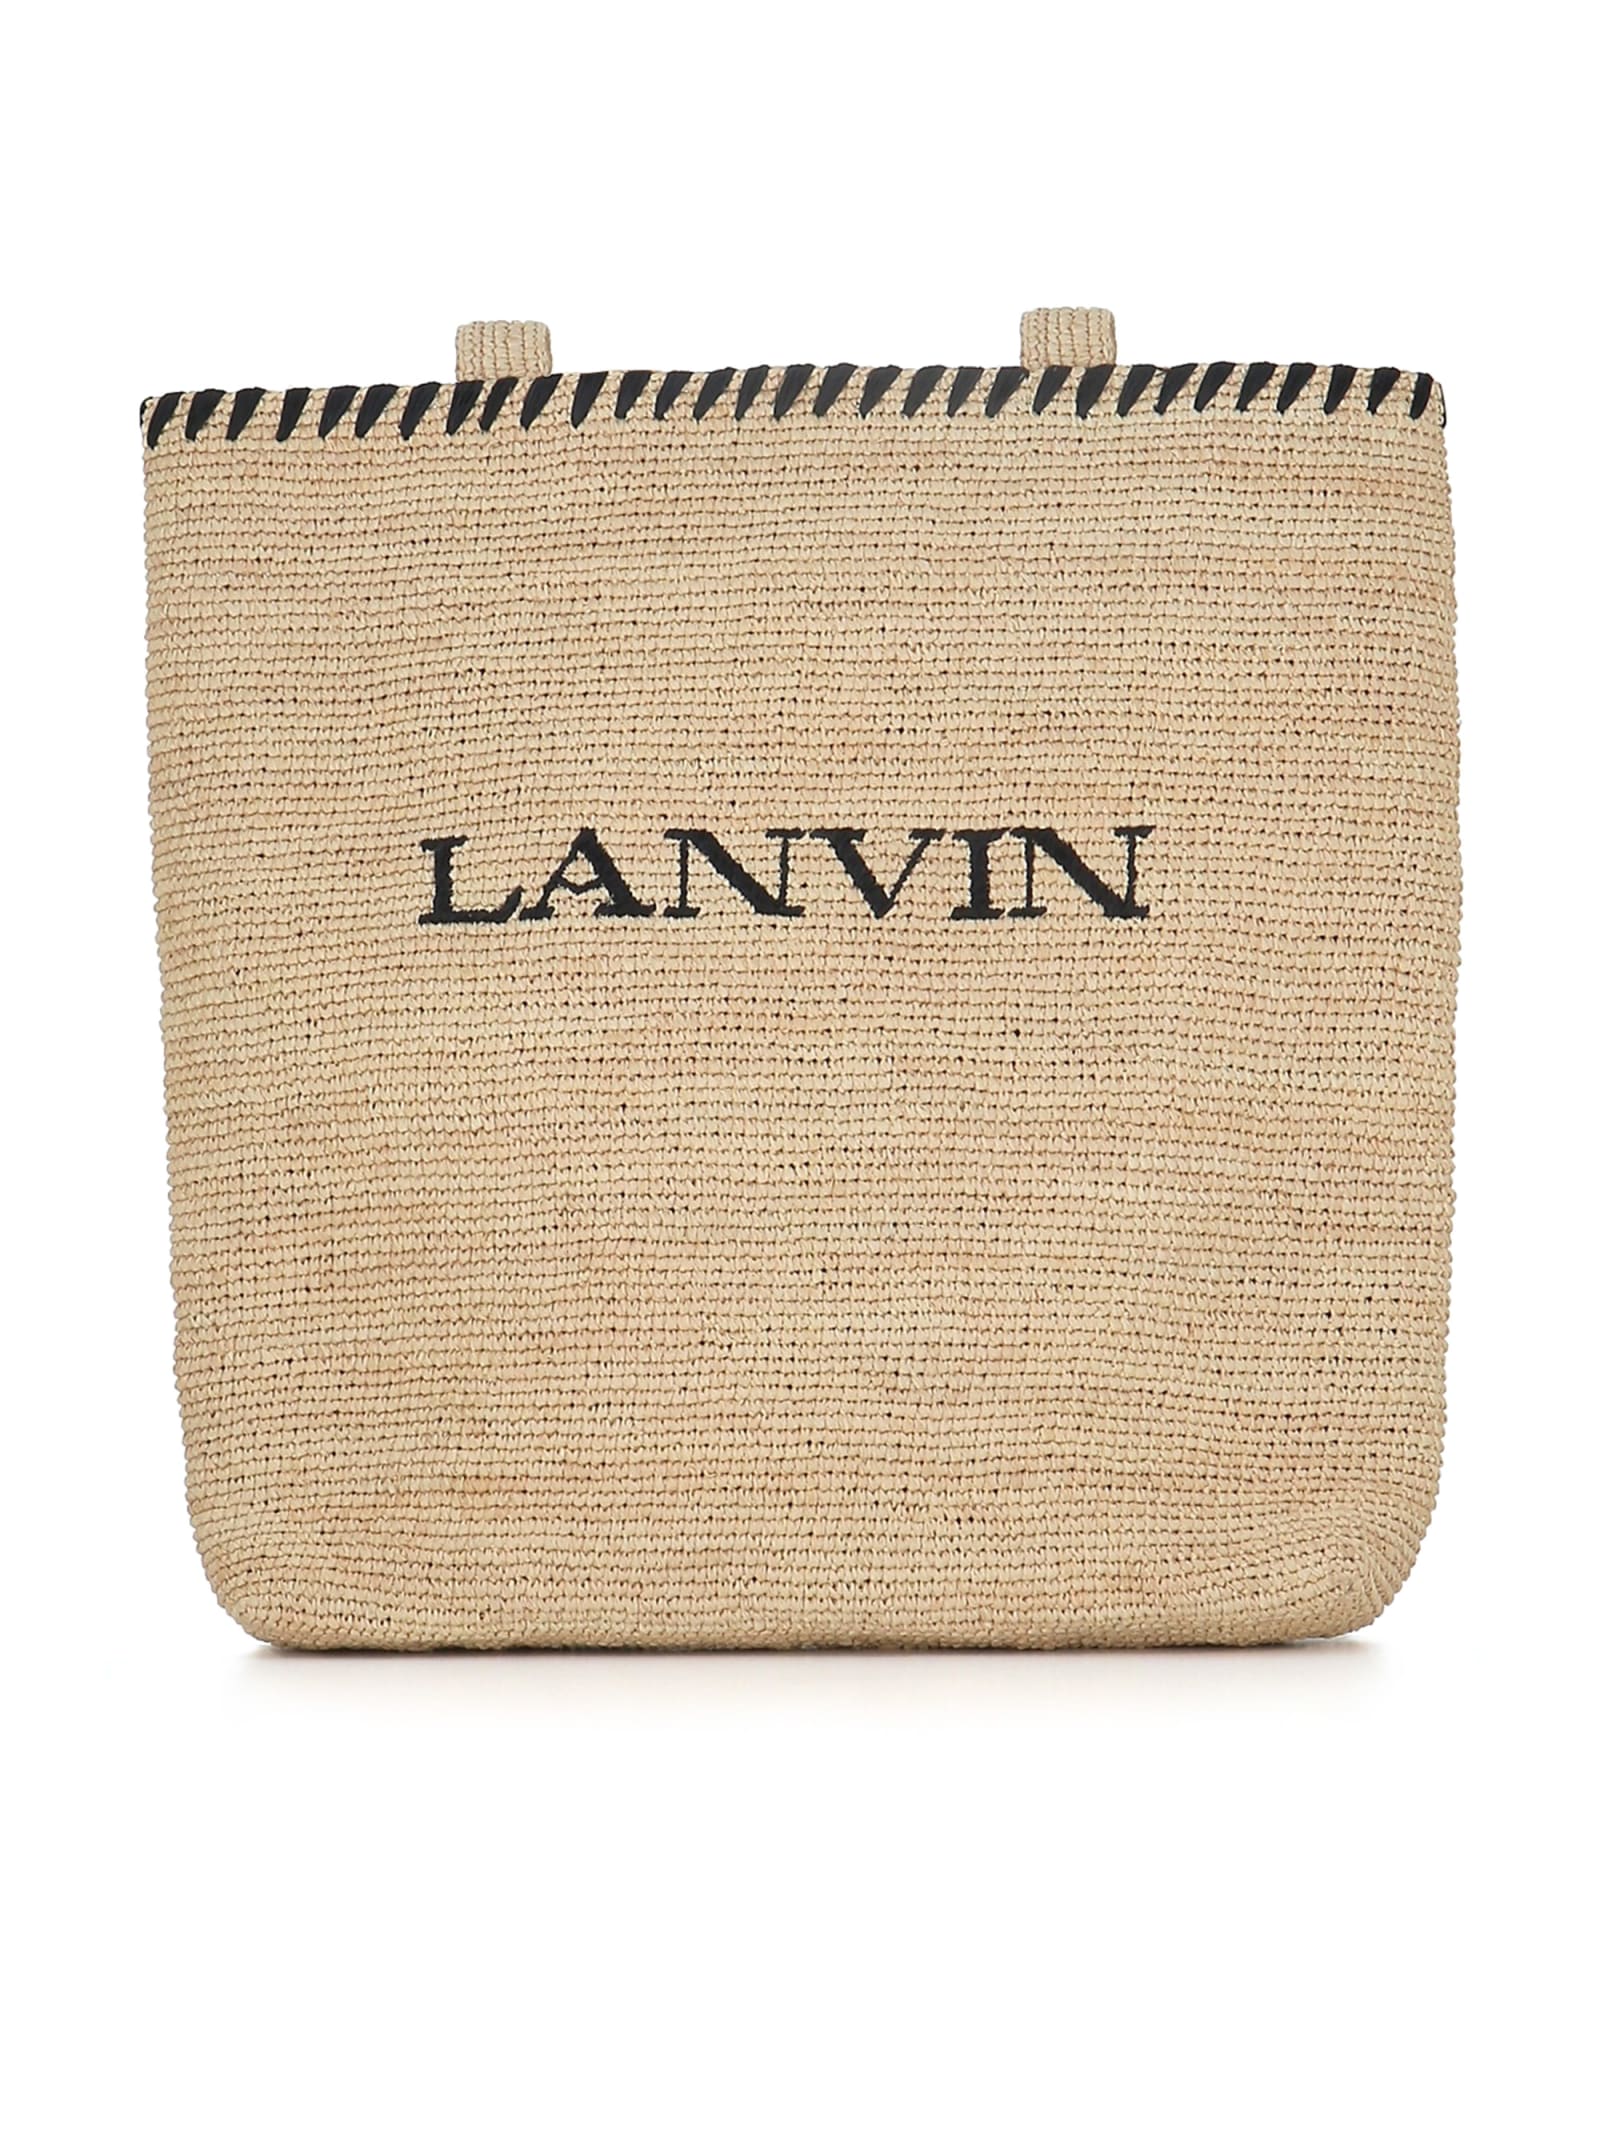 Shop Lanvin Raffia Tote Bag In Beige